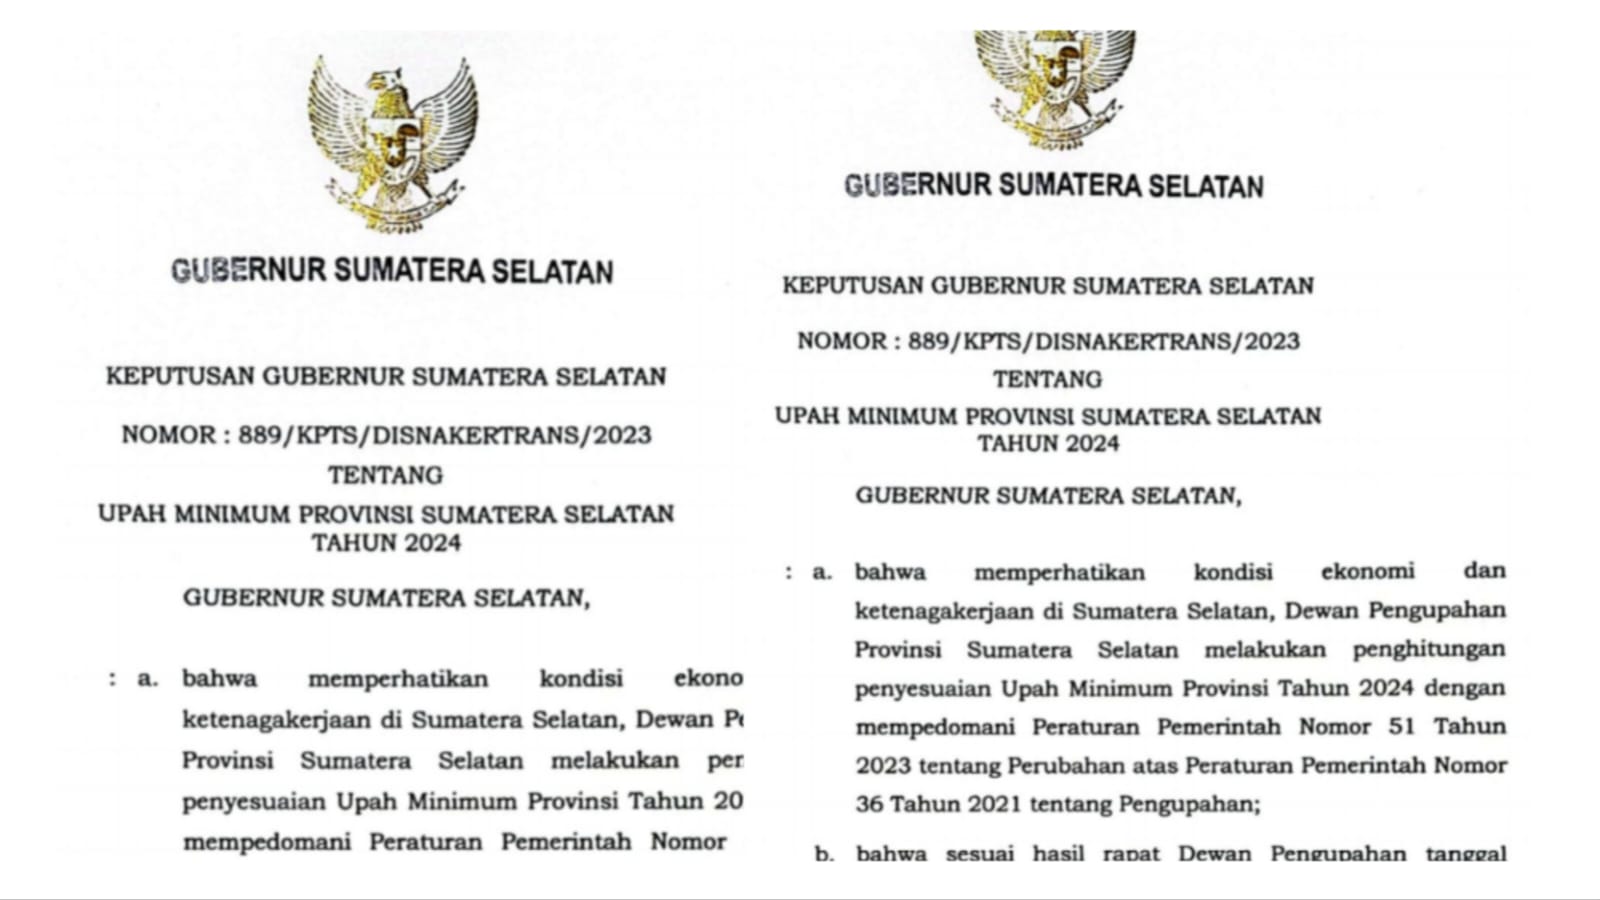 UMP 2024 Sumatera Selatan Tertinggi Ketiga Wilayah Sumatera, Bengkulu Juru Kunci 